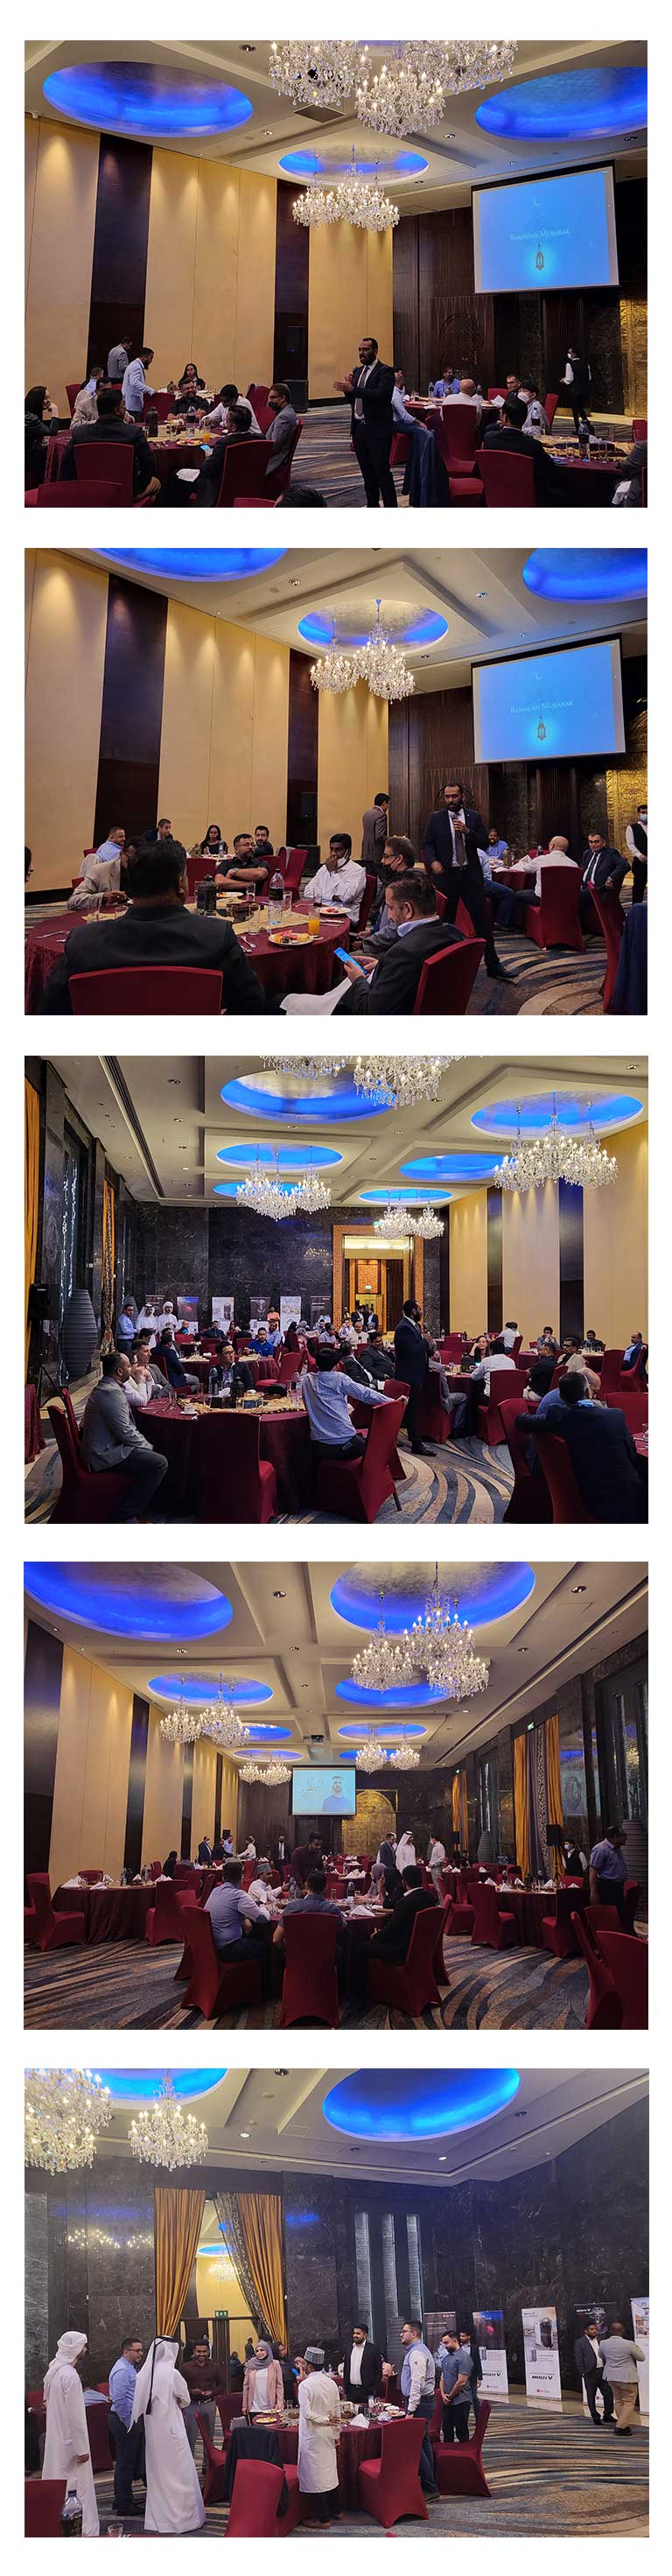 حفل إفطار فريق حلول الهواء بشركة إل جي وشركائها في فندق رافلز دبي 